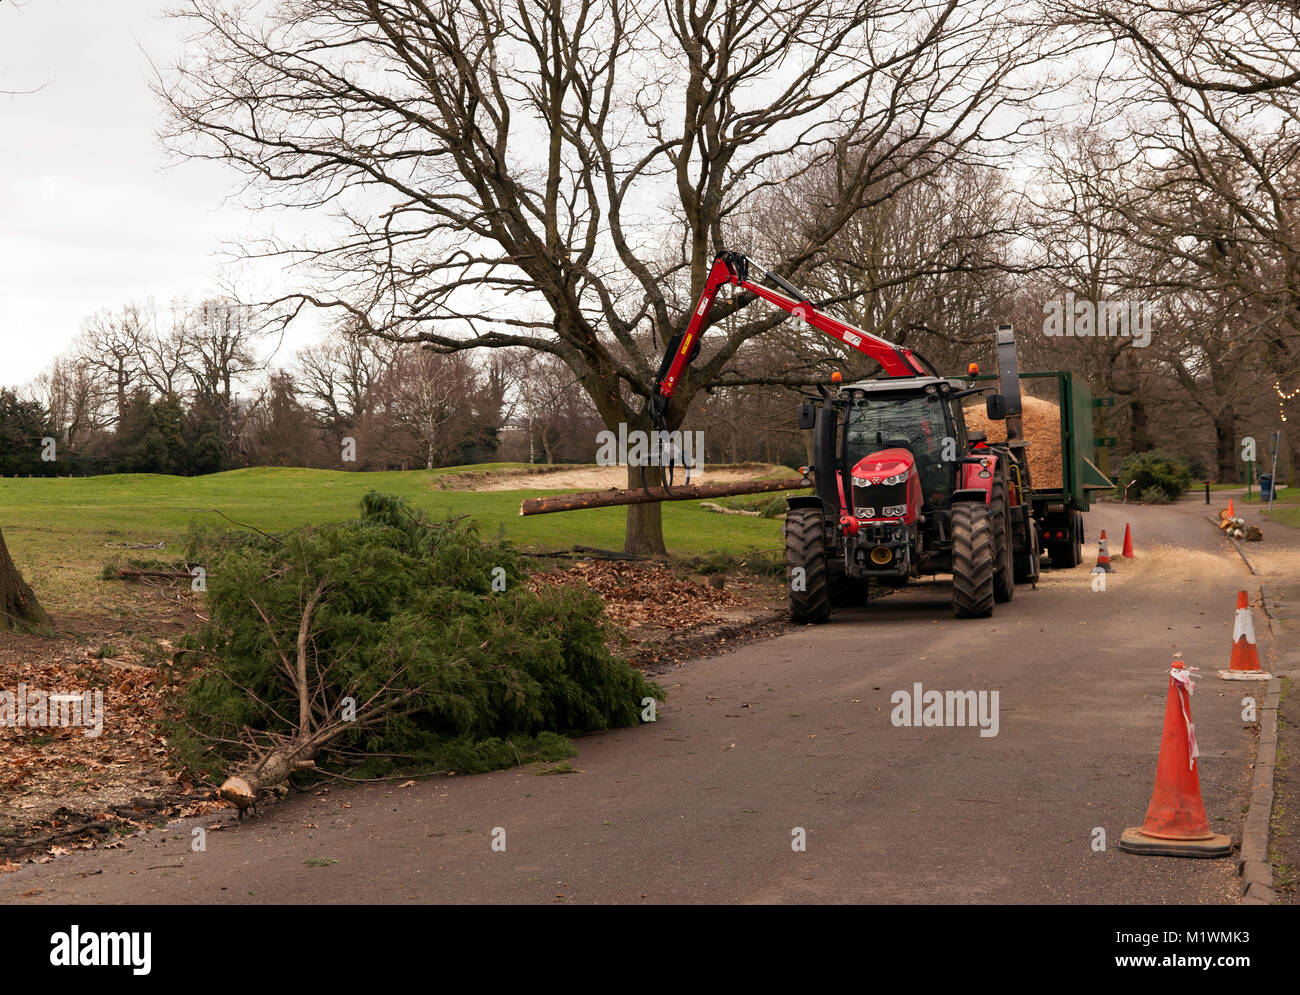 Fremdfirmen beschäftigt Entfernen gesunde Bäume aus Beckenham Place Park, als Teil von Lewisham Räte Tree management Program" in Beckenham Place Park Stockfoto